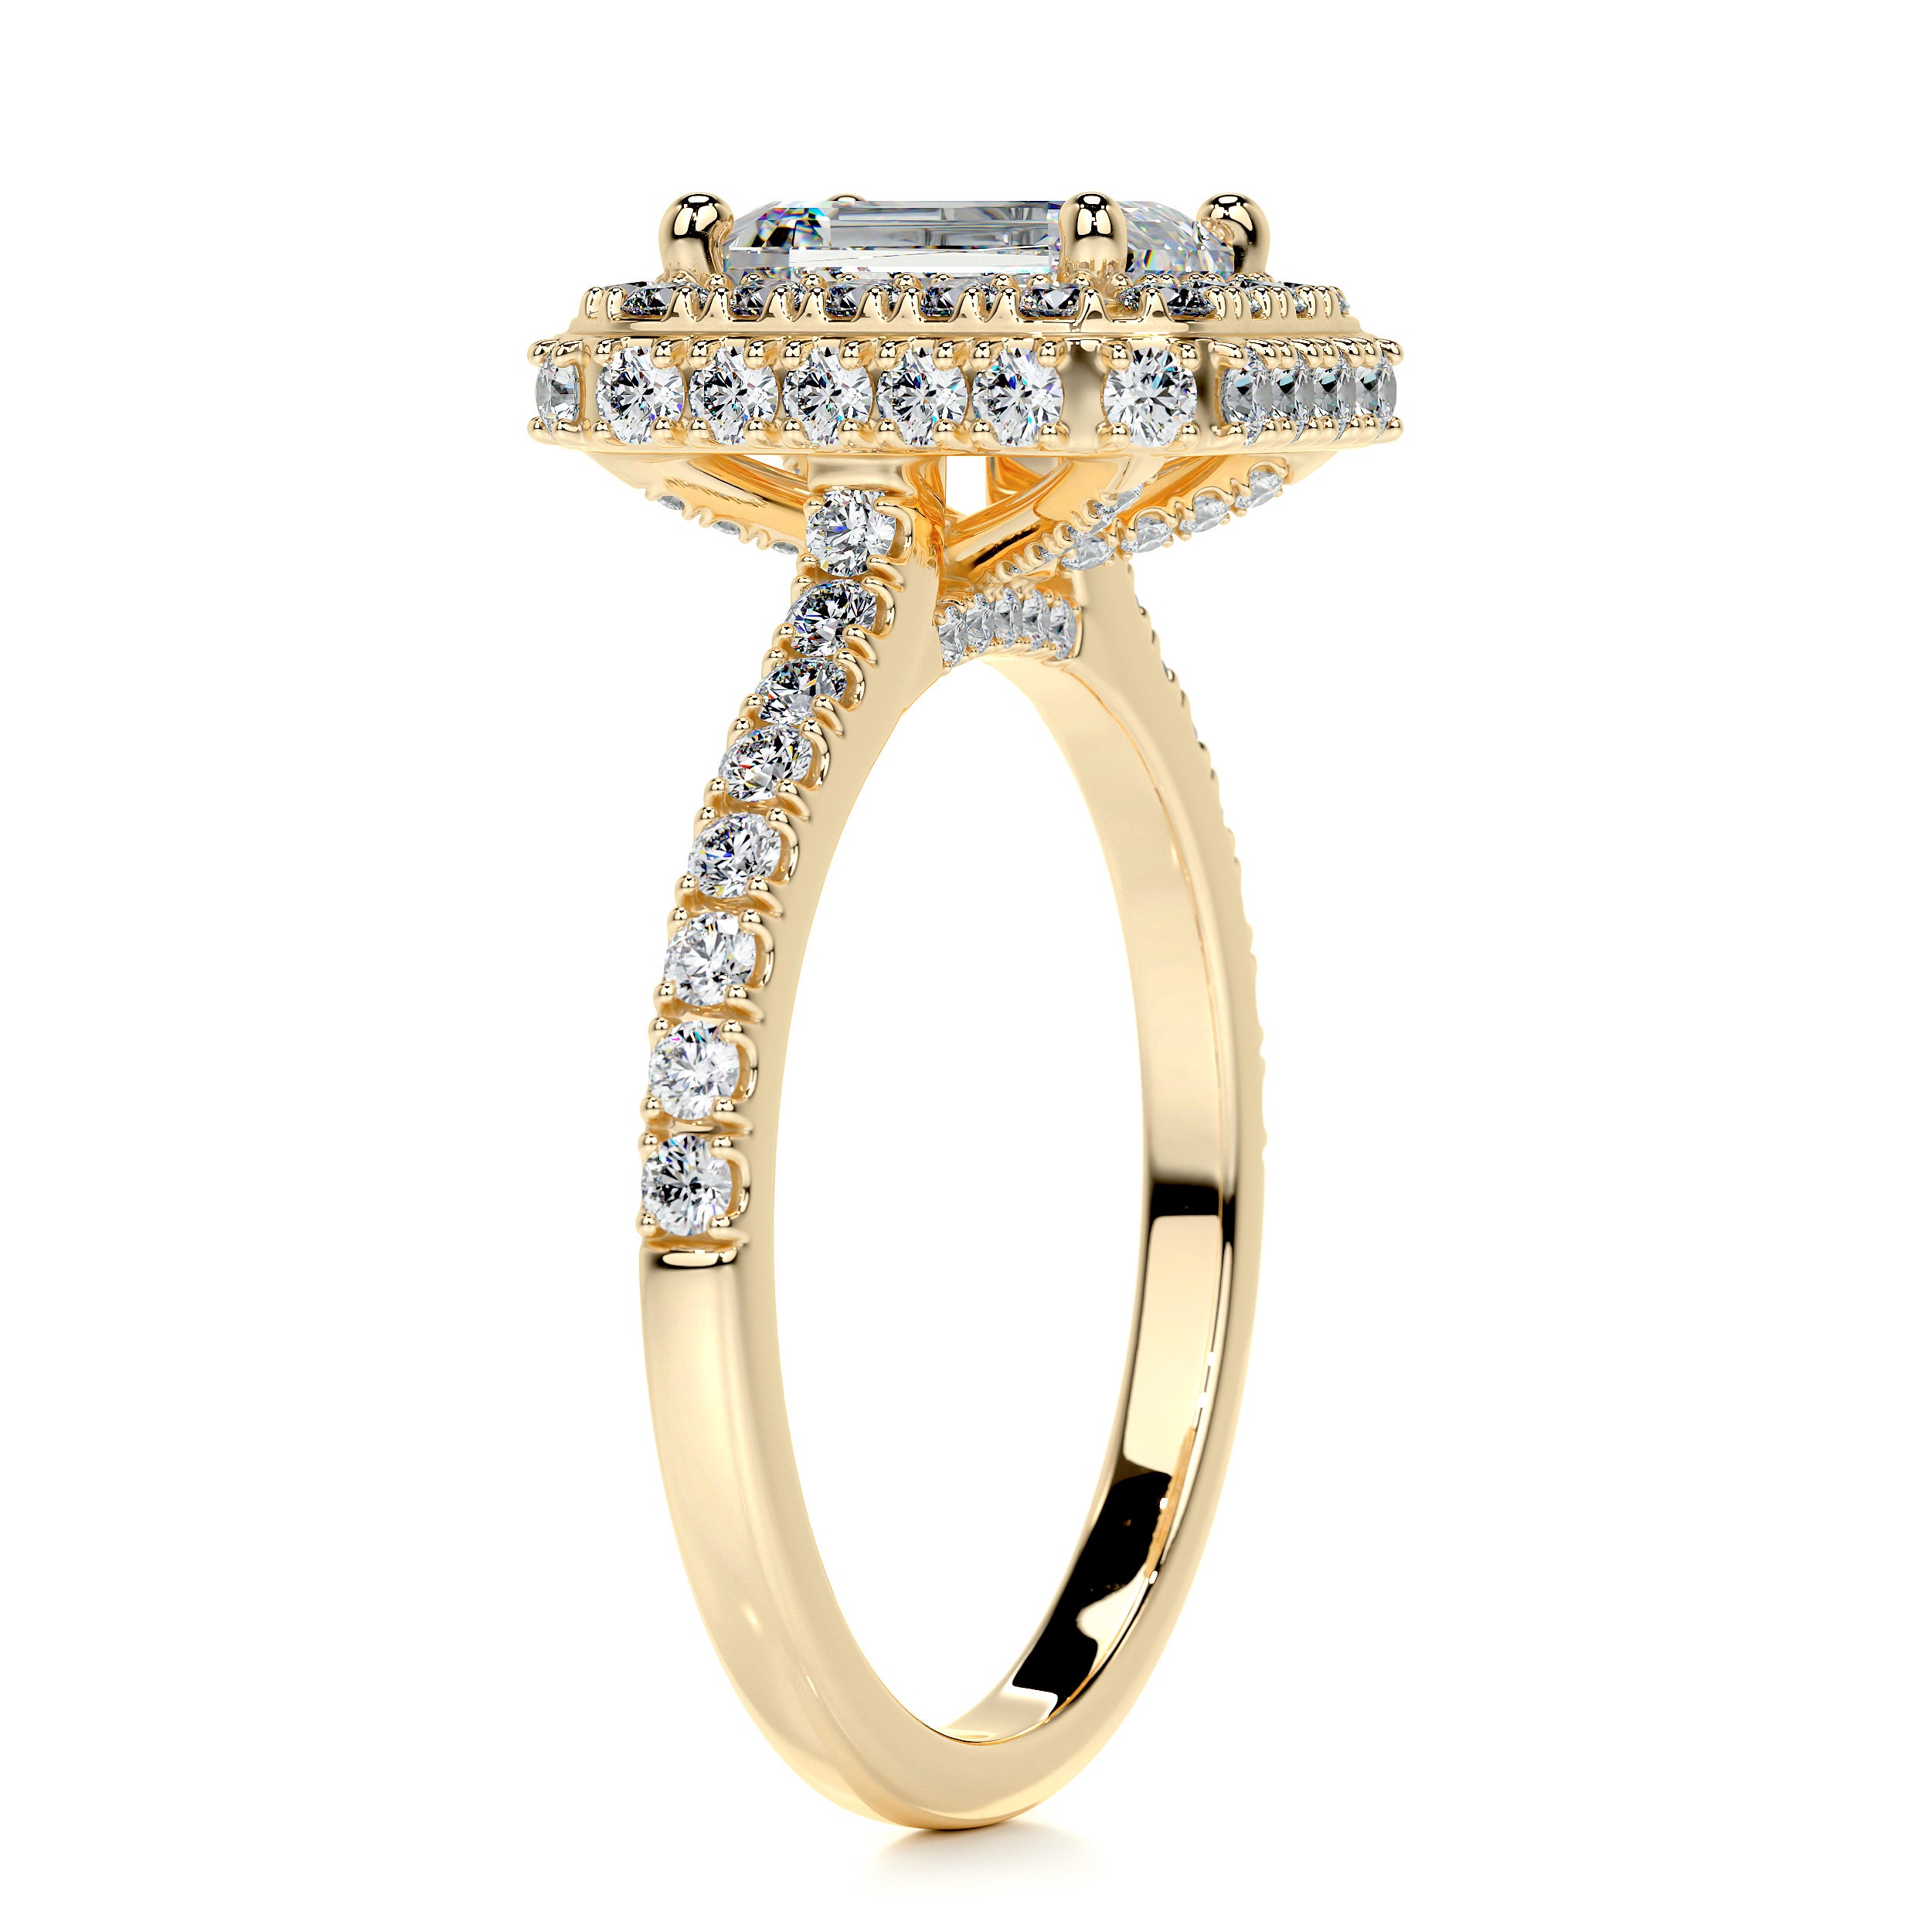 Lana Moissanite & Diamonds Ring   (2.5 Carat) -18K Yellow Gold